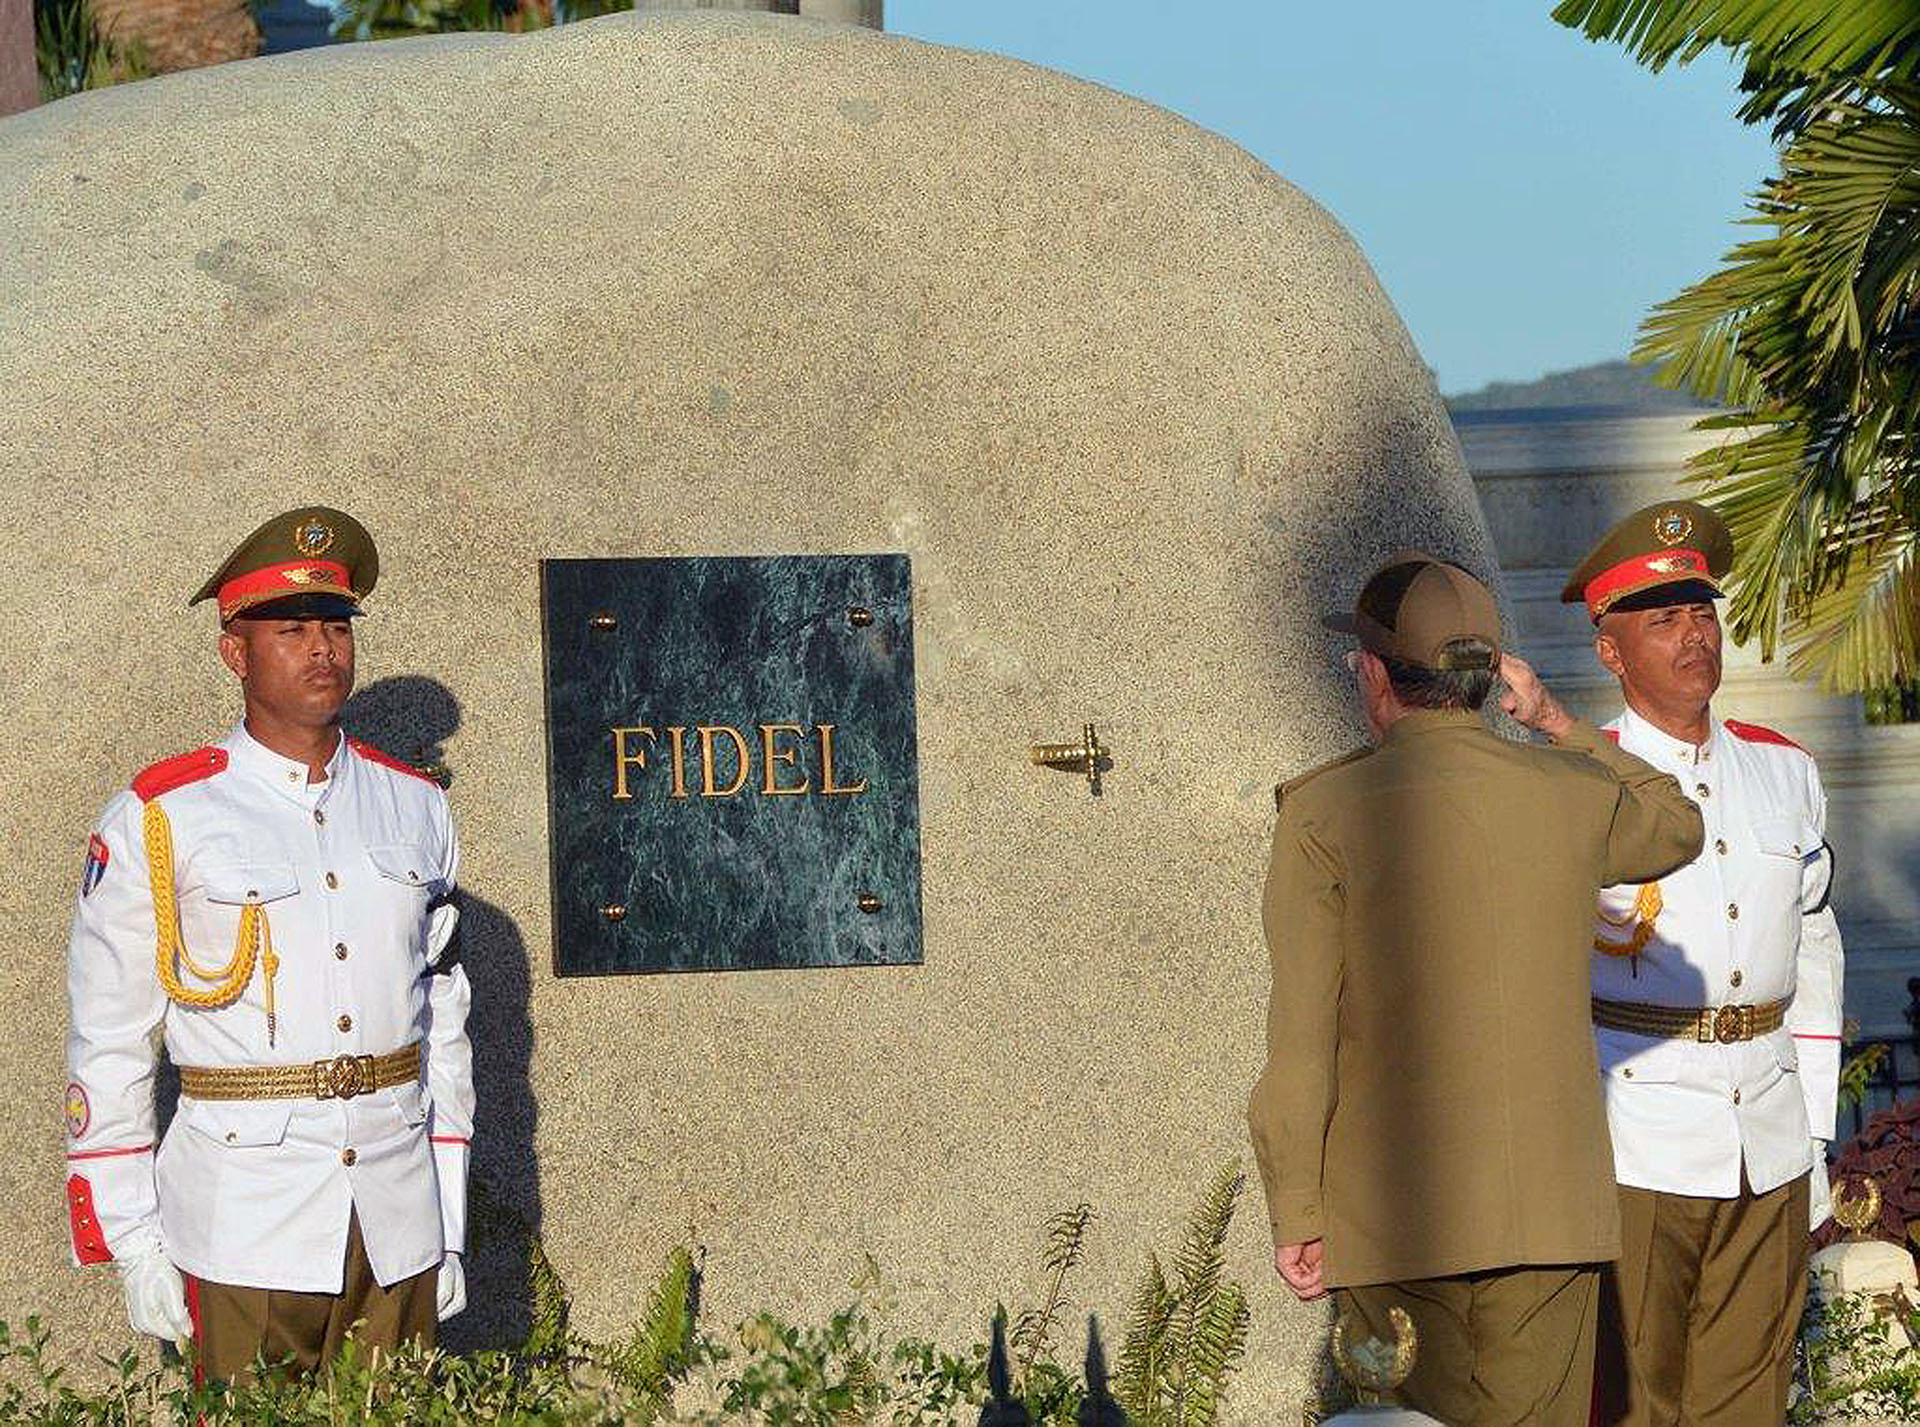 Fidel Castro’s ashes interred in private ceremony in Cuba